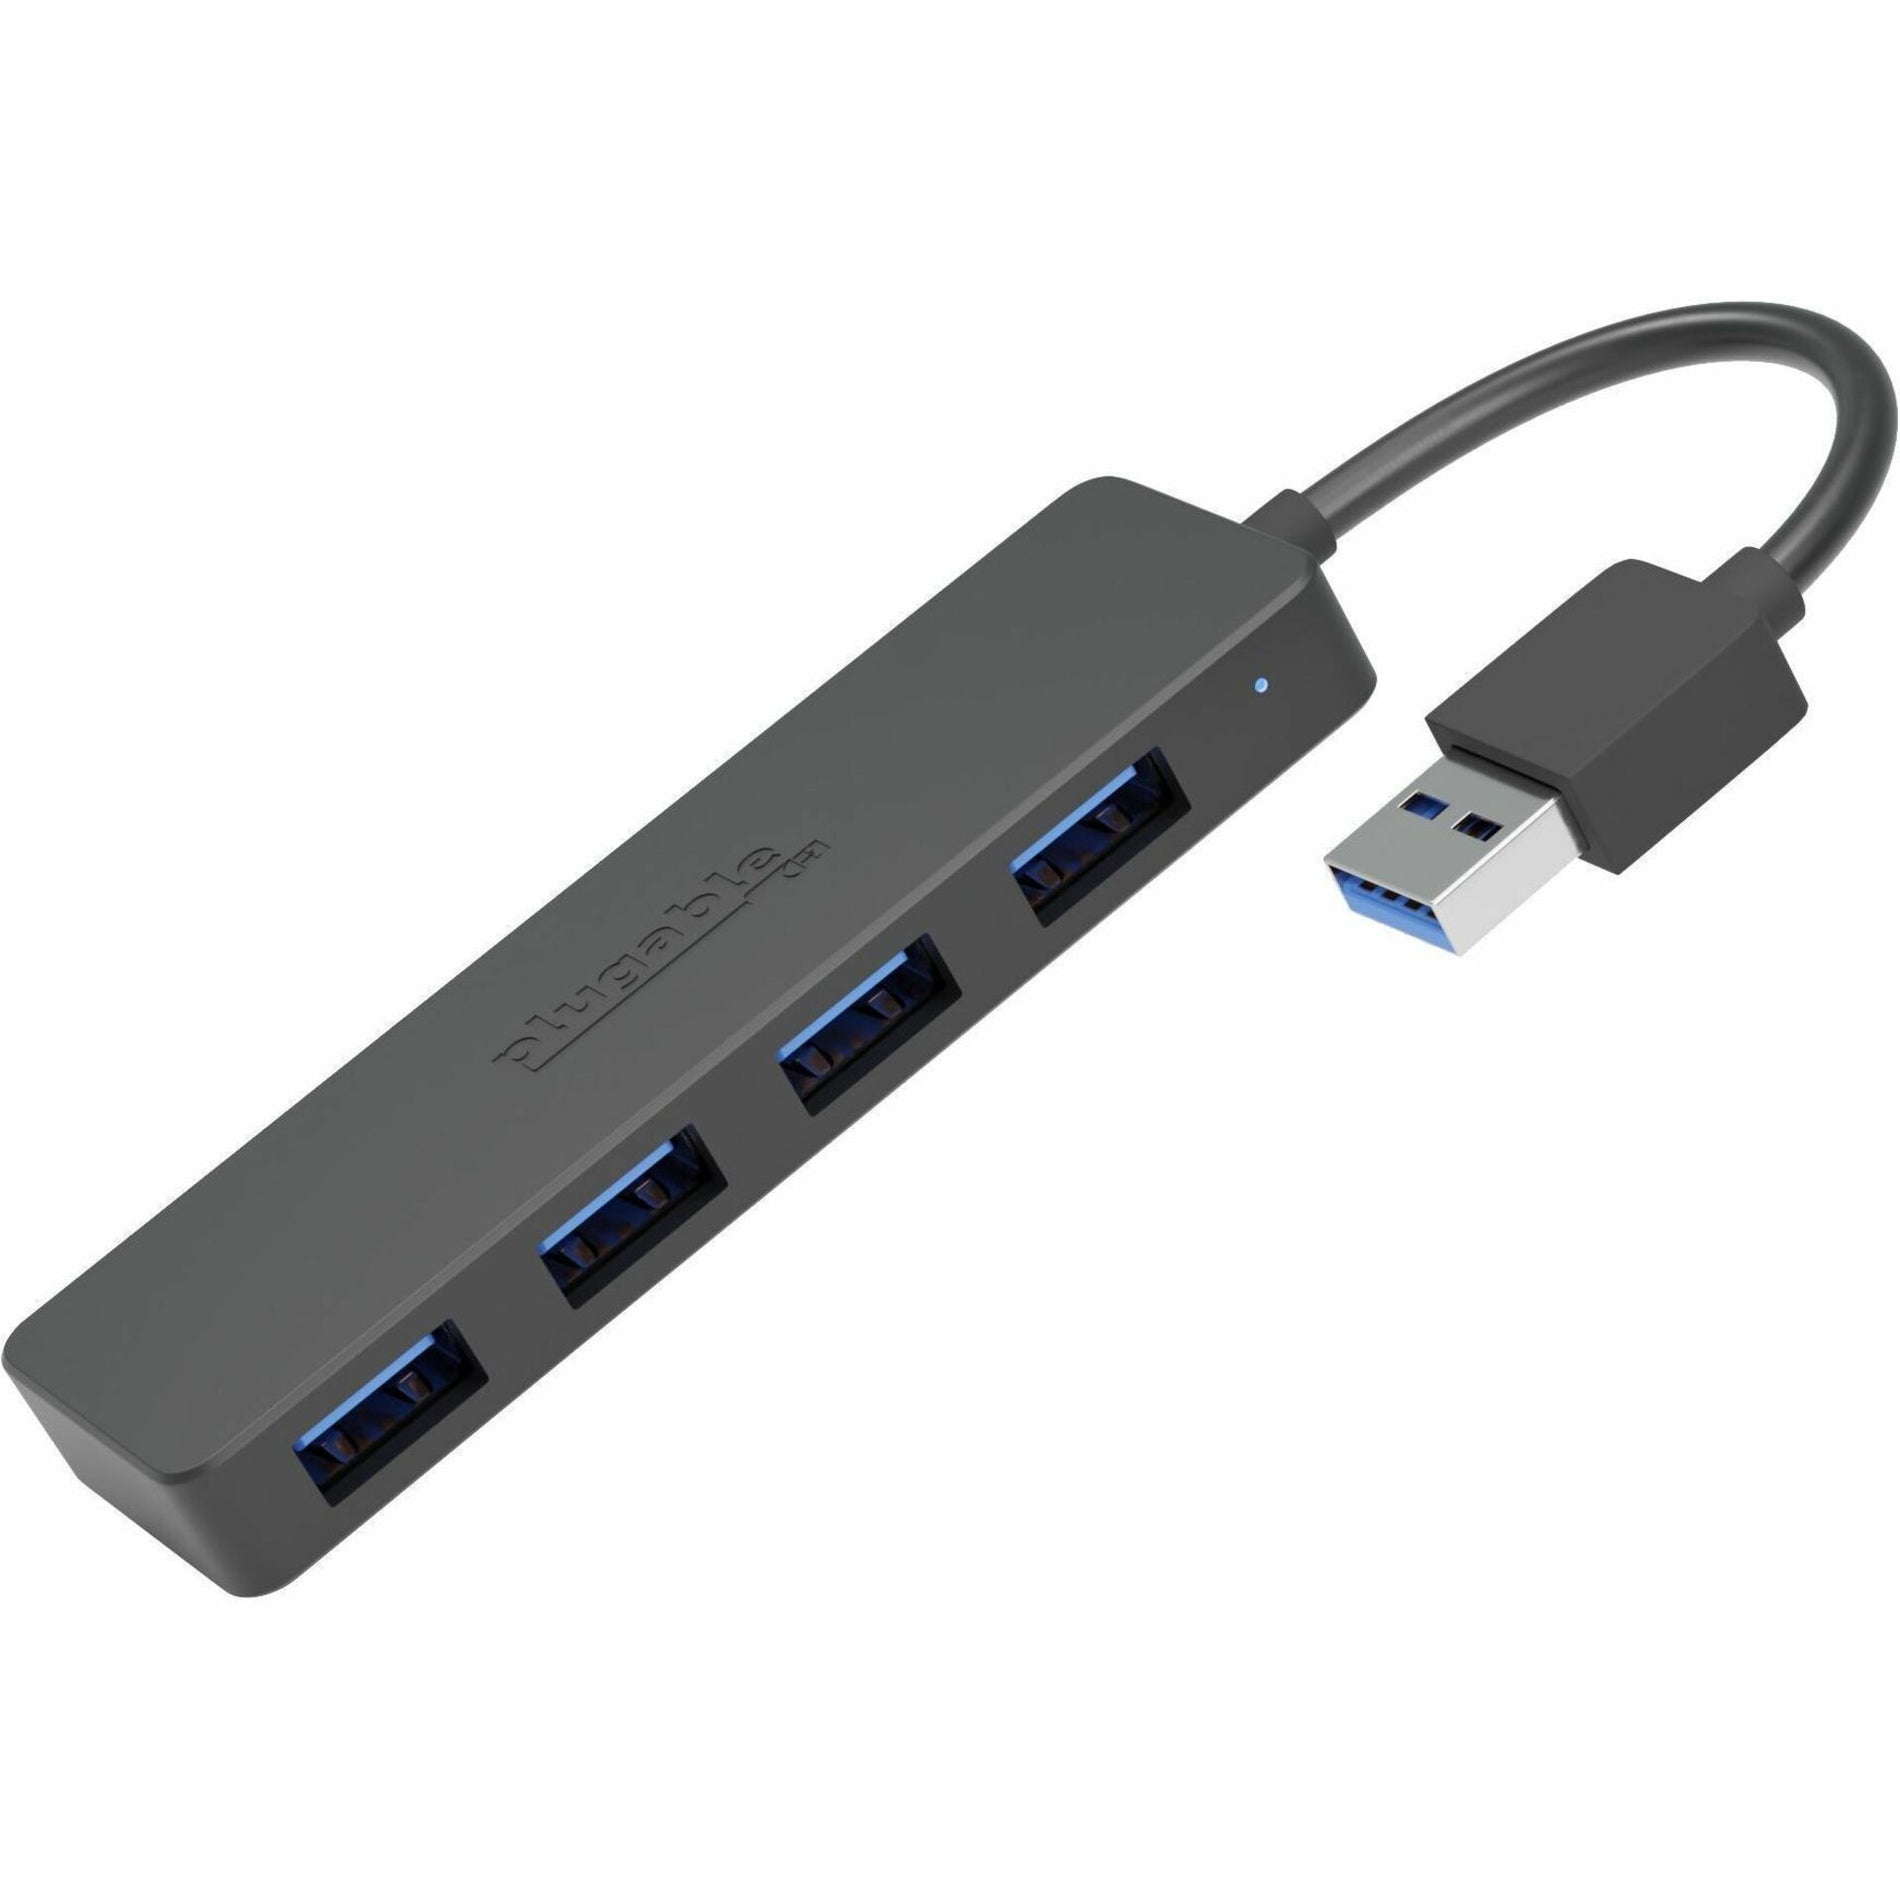 Plugable USB3-HUB4A USB Hub, 4 Port USB Splitter for Laptop, USB 3.0